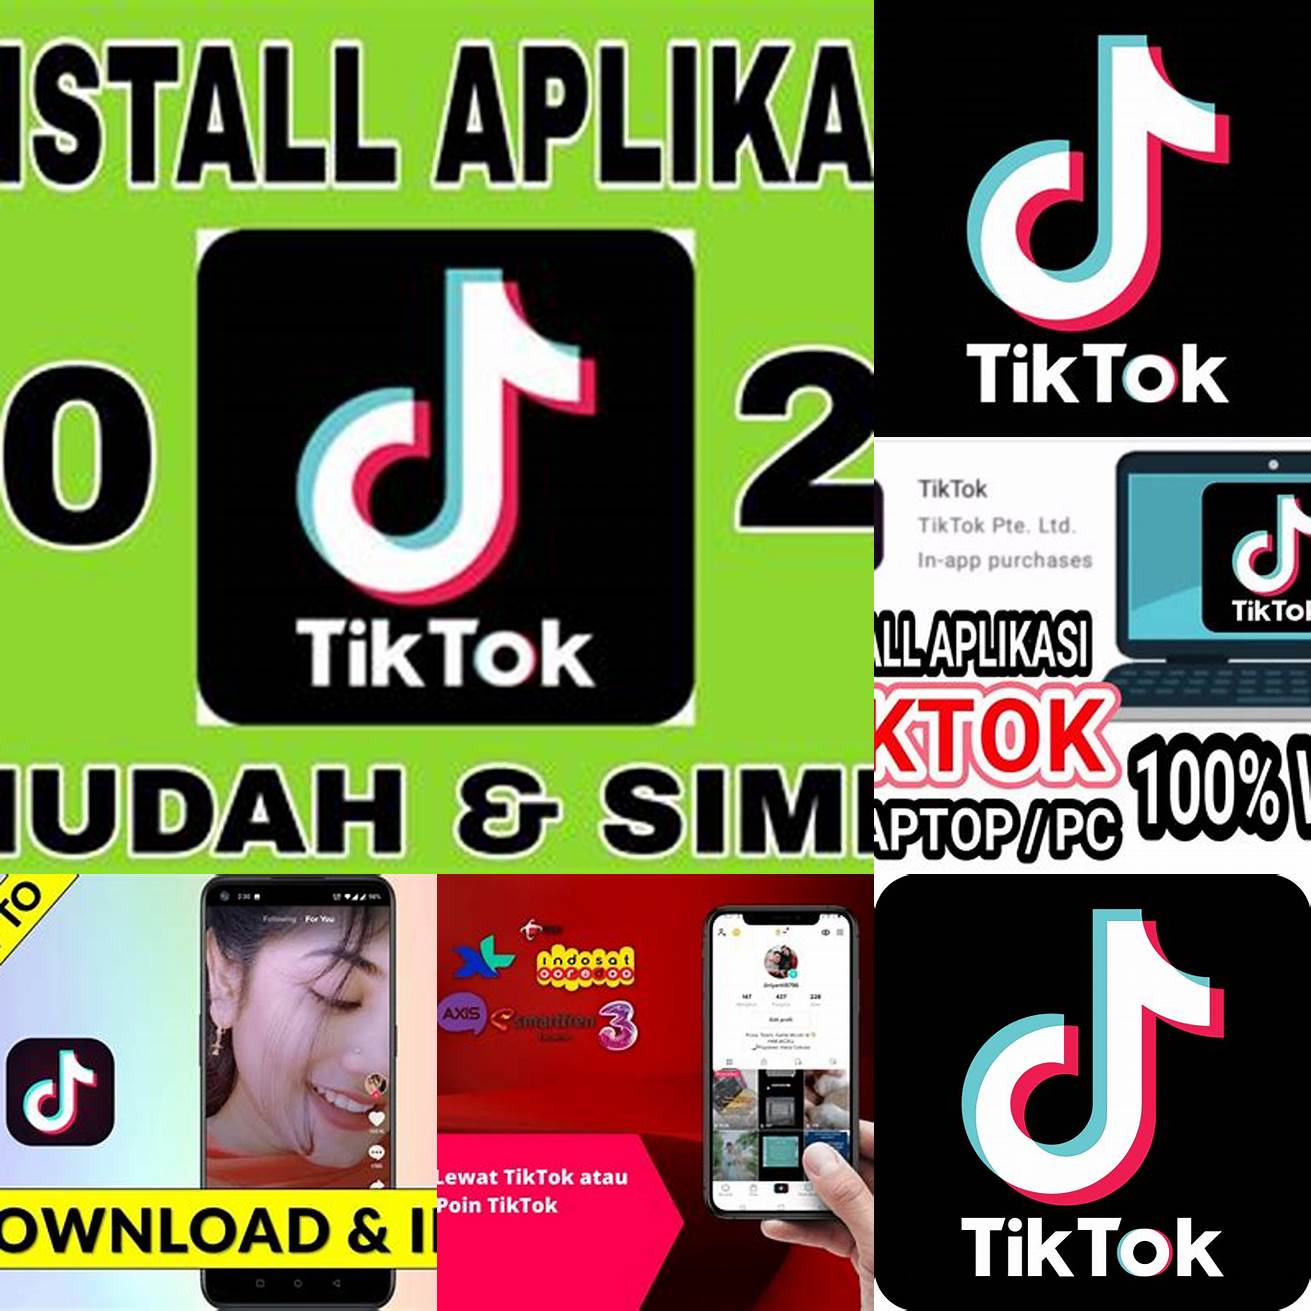 Unduh dan instal aplikasi TikTok di ponsel Anda